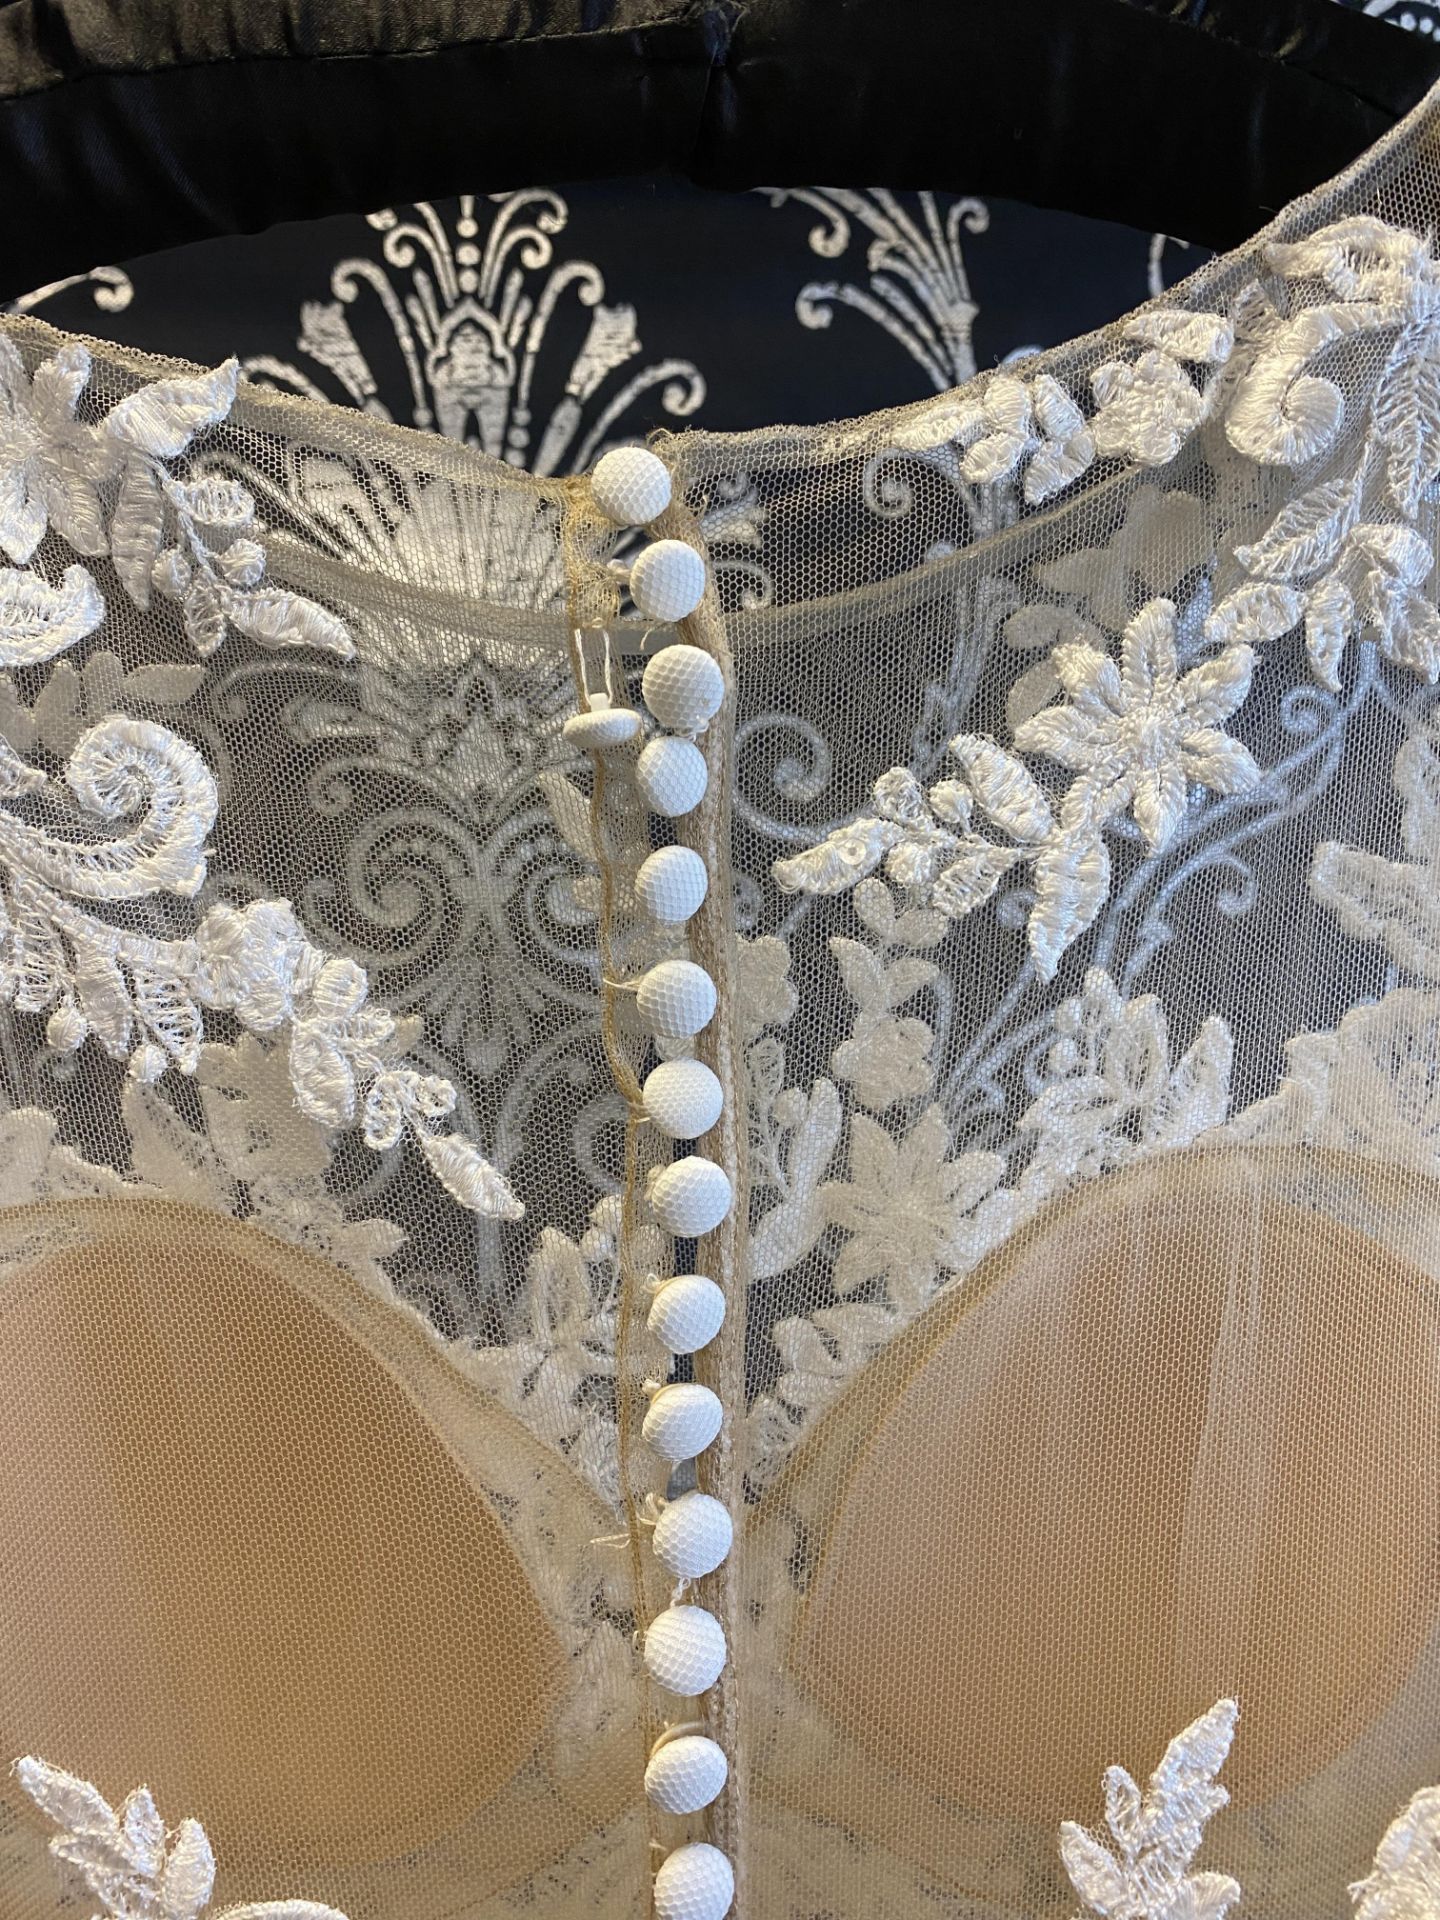 1 x PRONOVIAS Stunning Lace And Chiffon Full Skirted Designer Wedding Dress RRP £1,800 UK12 - Image 7 of 7